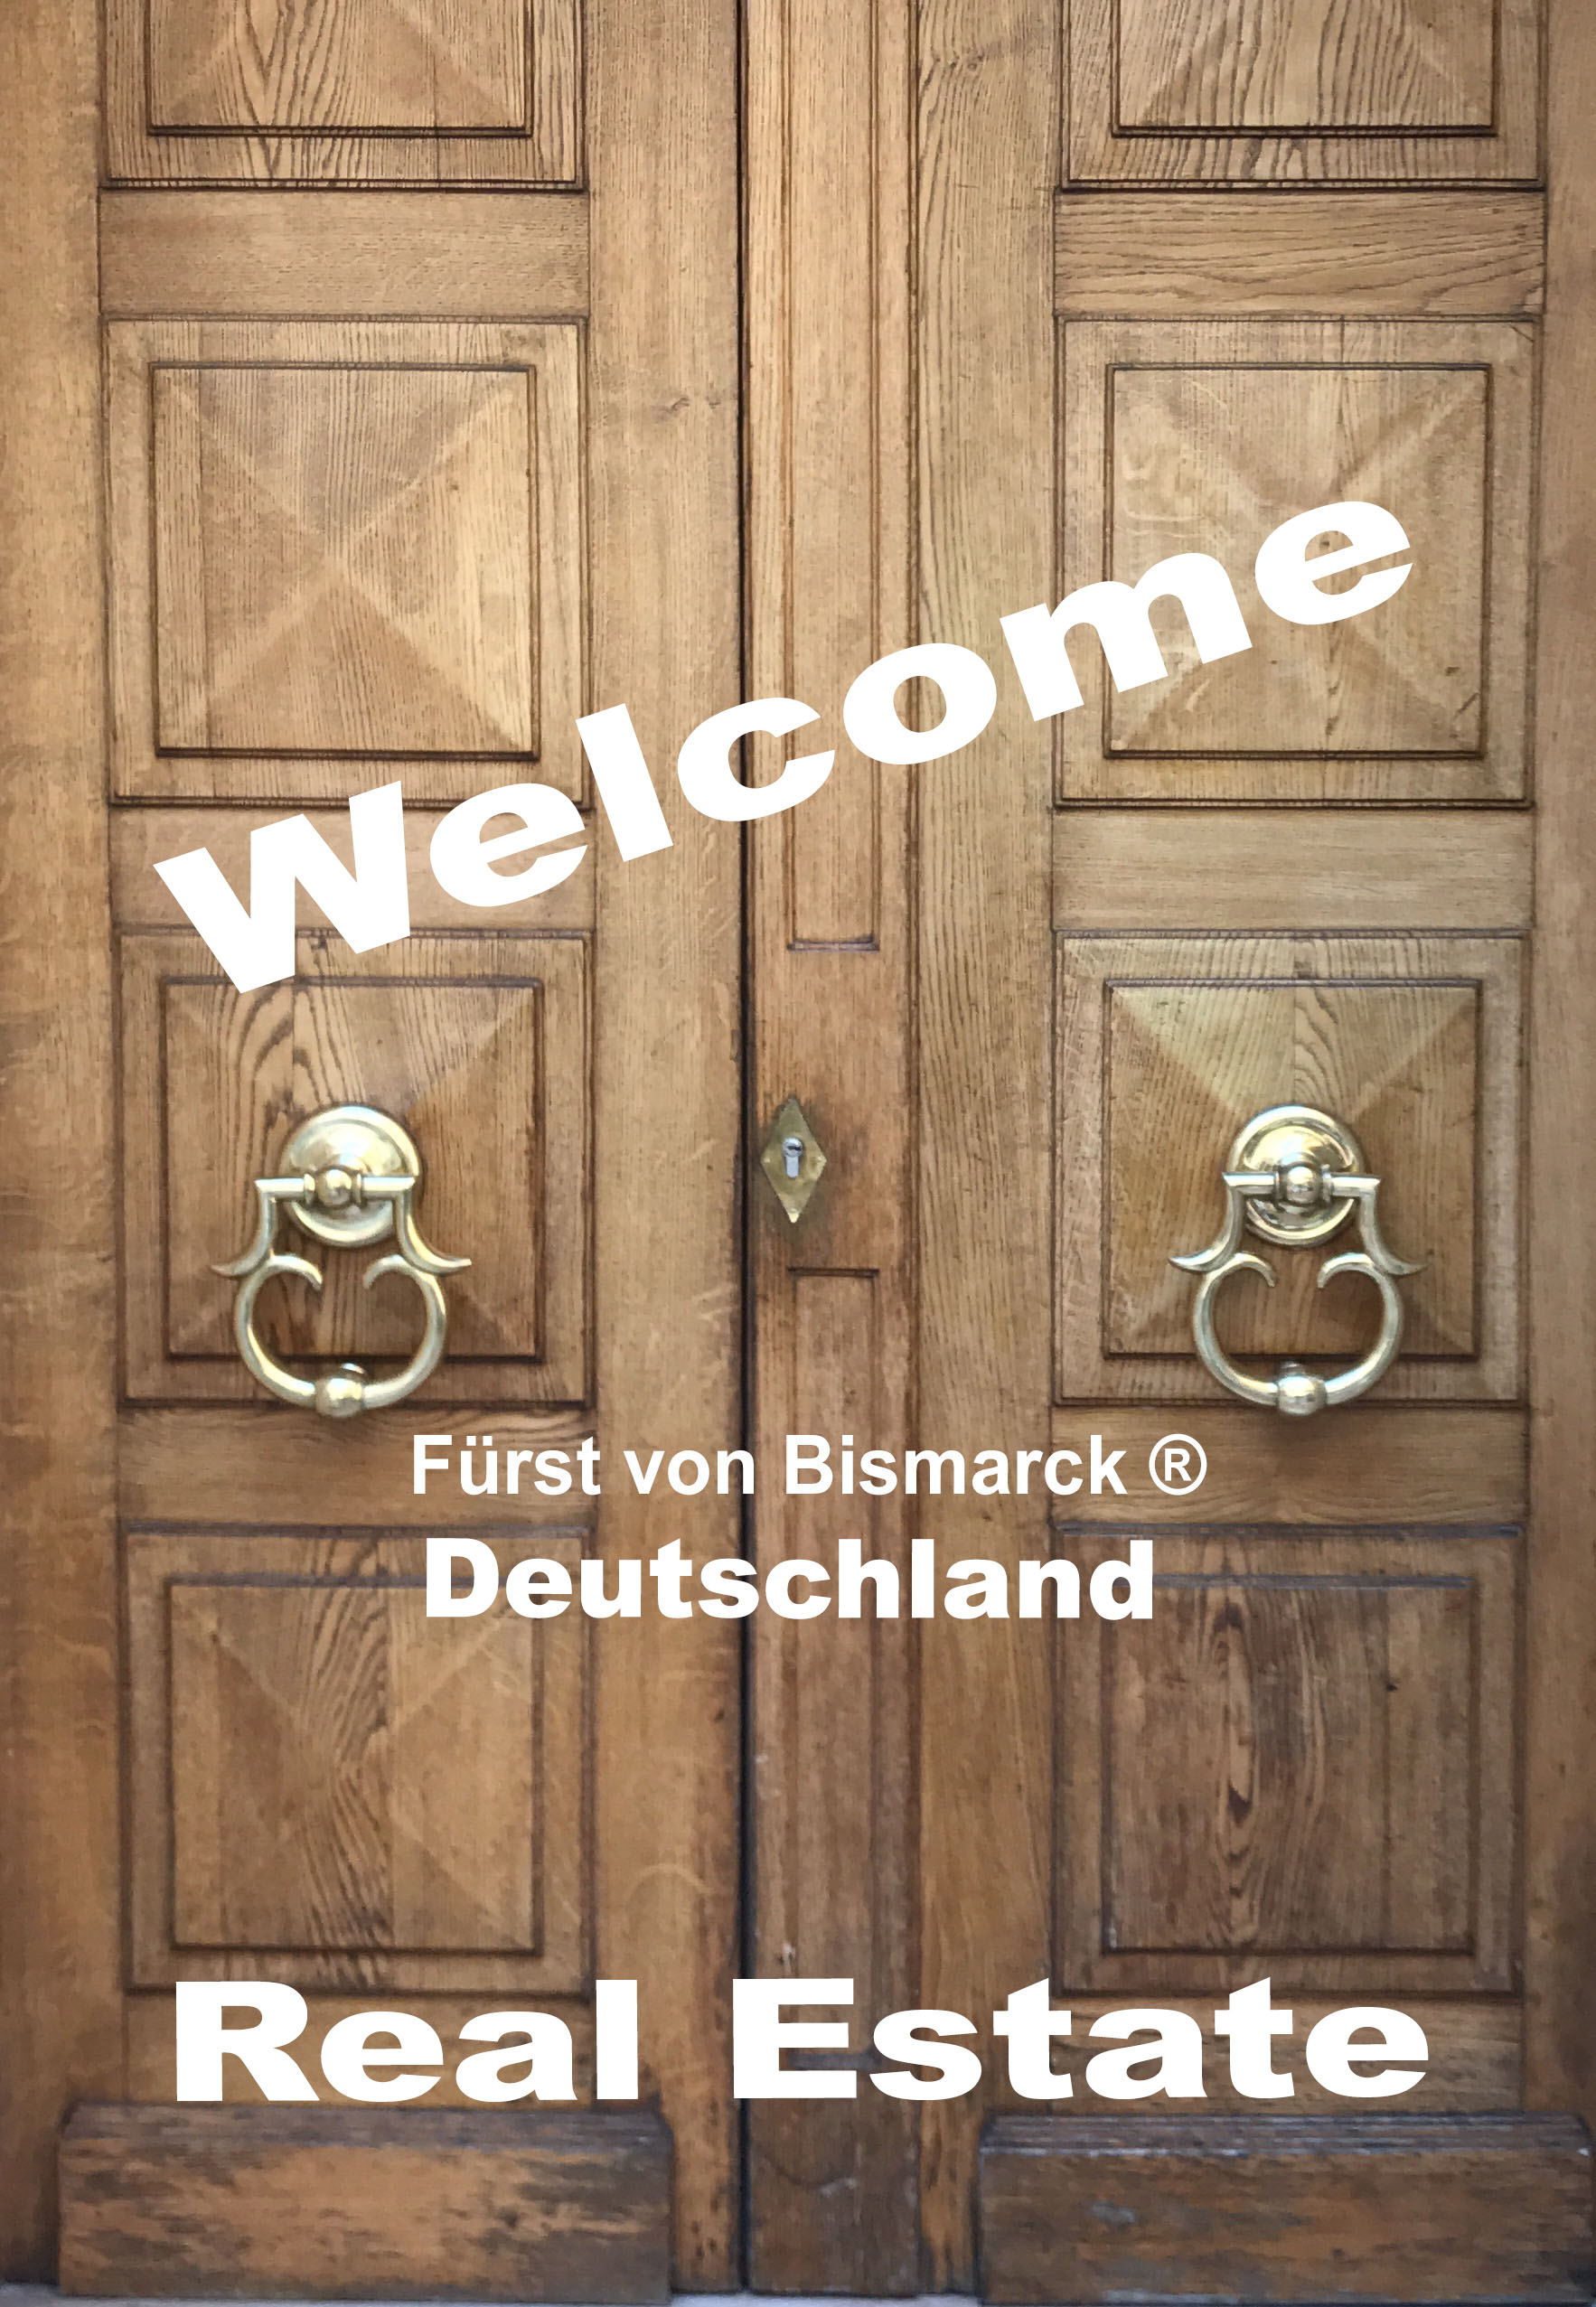 Fürst von Bismarck Real Estate - Eine Feine Adresse für Feine Adressen